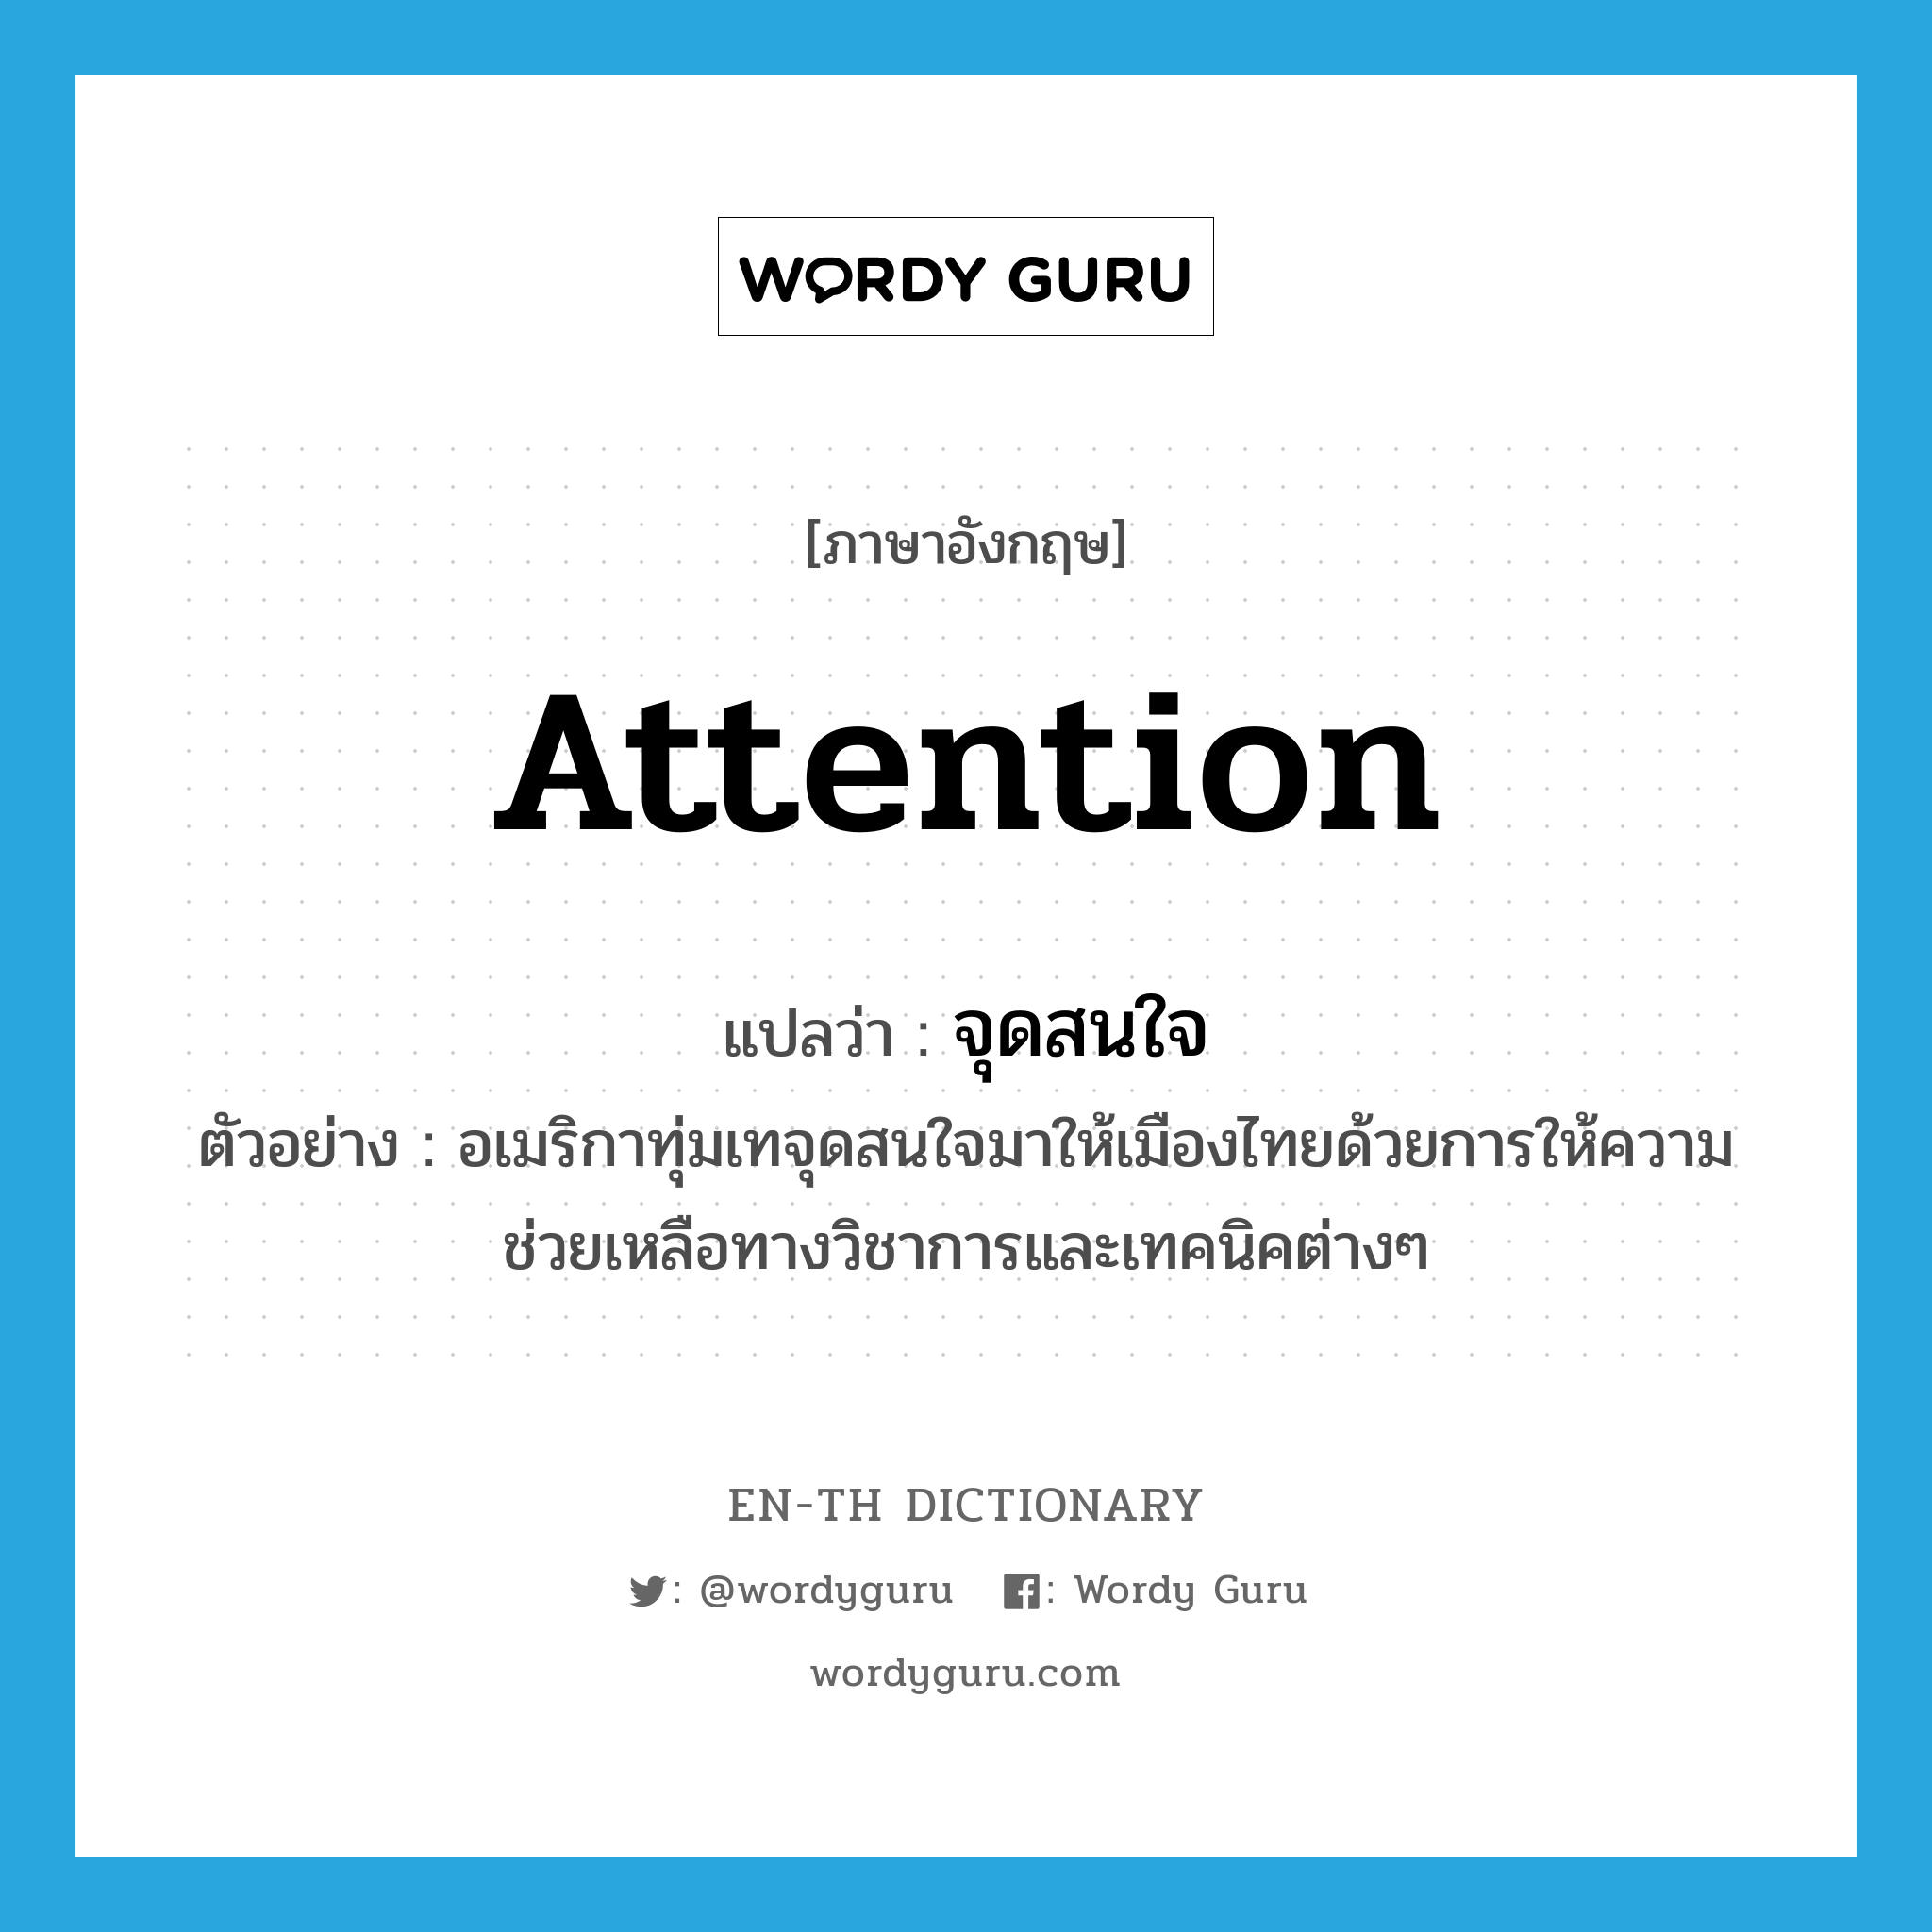 จุดสนใจ ภาษาอังกฤษ?, คำศัพท์ภาษาอังกฤษ จุดสนใจ แปลว่า attention ประเภท N ตัวอย่าง อเมริกาทุ่มเทจุดสนใจมาให้เมืองไทยด้วยการให้ความช่วยเหลือทางวิชาการและเทคนิคต่างๆ หมวด N